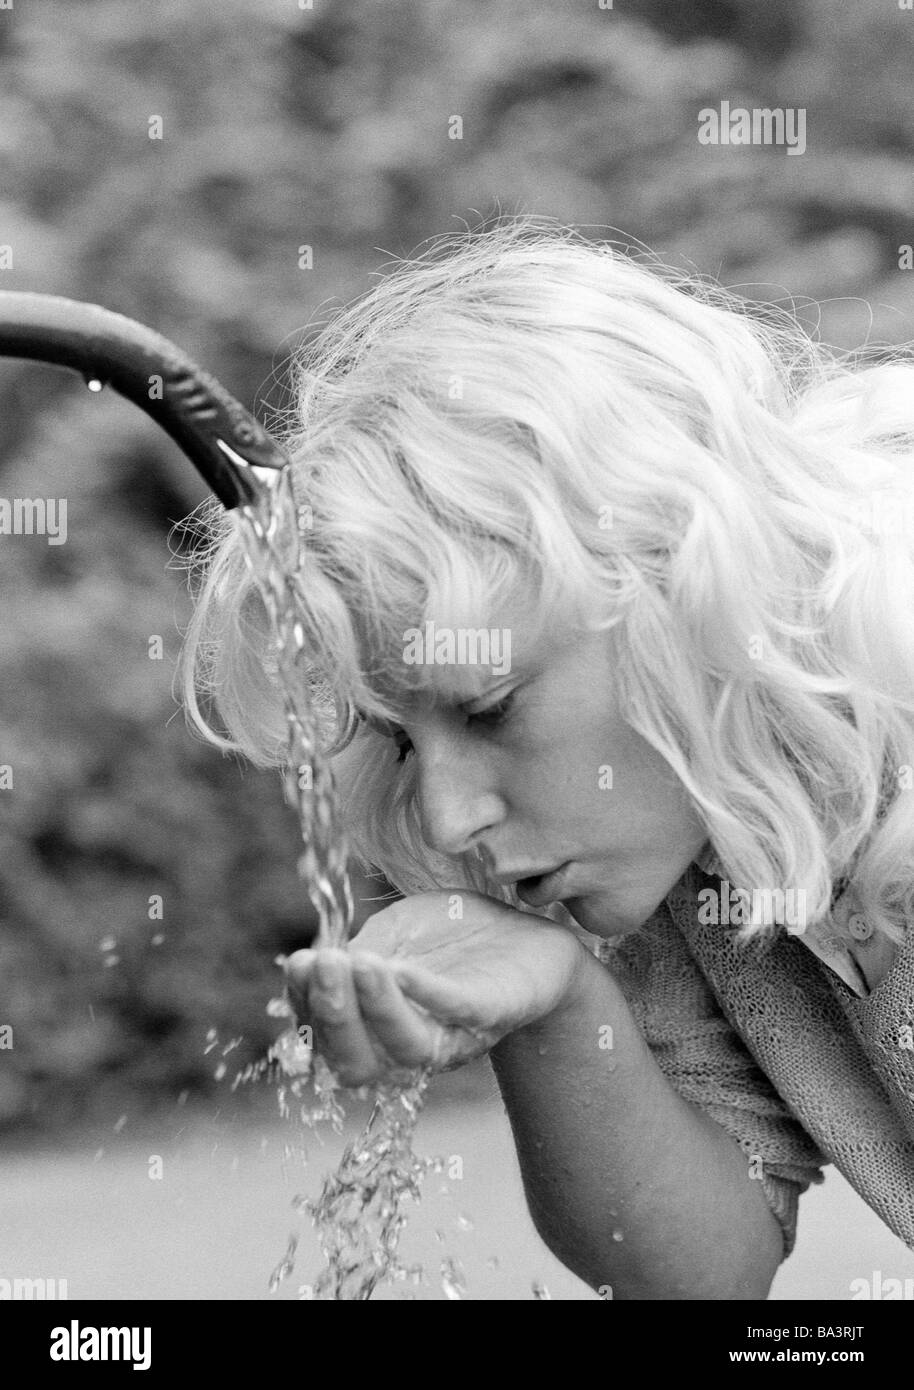 Achtziger Jahre, Menschen, junge Frau trinkt Wasser von einem Brunnen, Erfrischung, Abkuehlung, Portraet, blondhaarig, Elisabeth Foto Stock